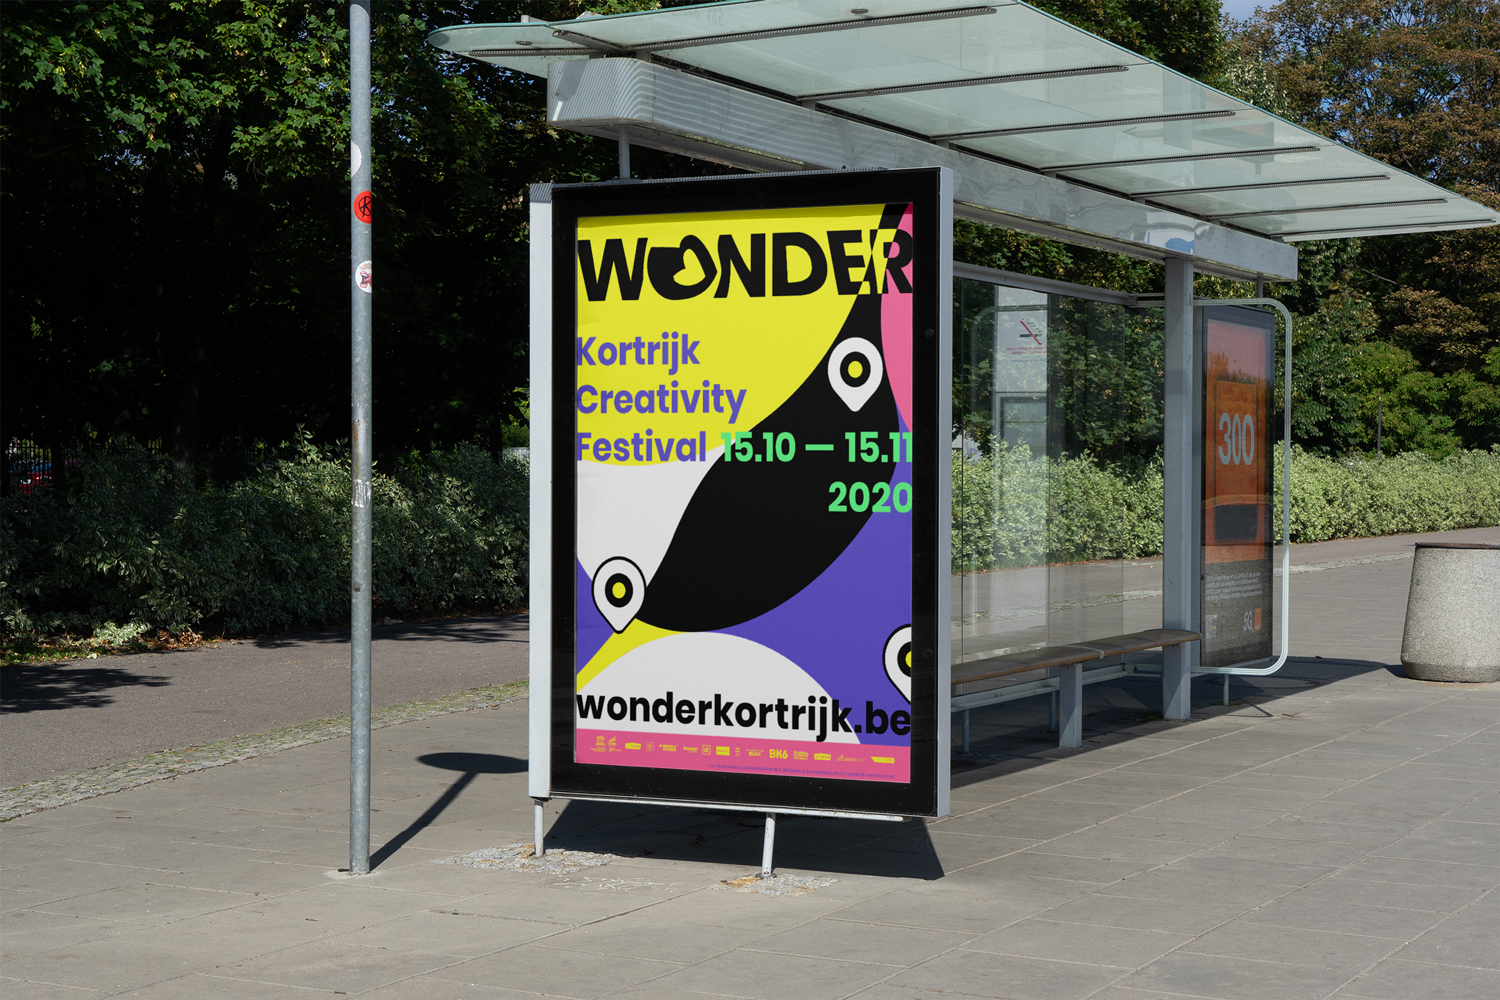 Wonder-Kortrijk-Creativity-Festival-identity-branding-Designregio-Kortrijk-Artist-Proof-Studio-Thomas-De-Ben-2.png